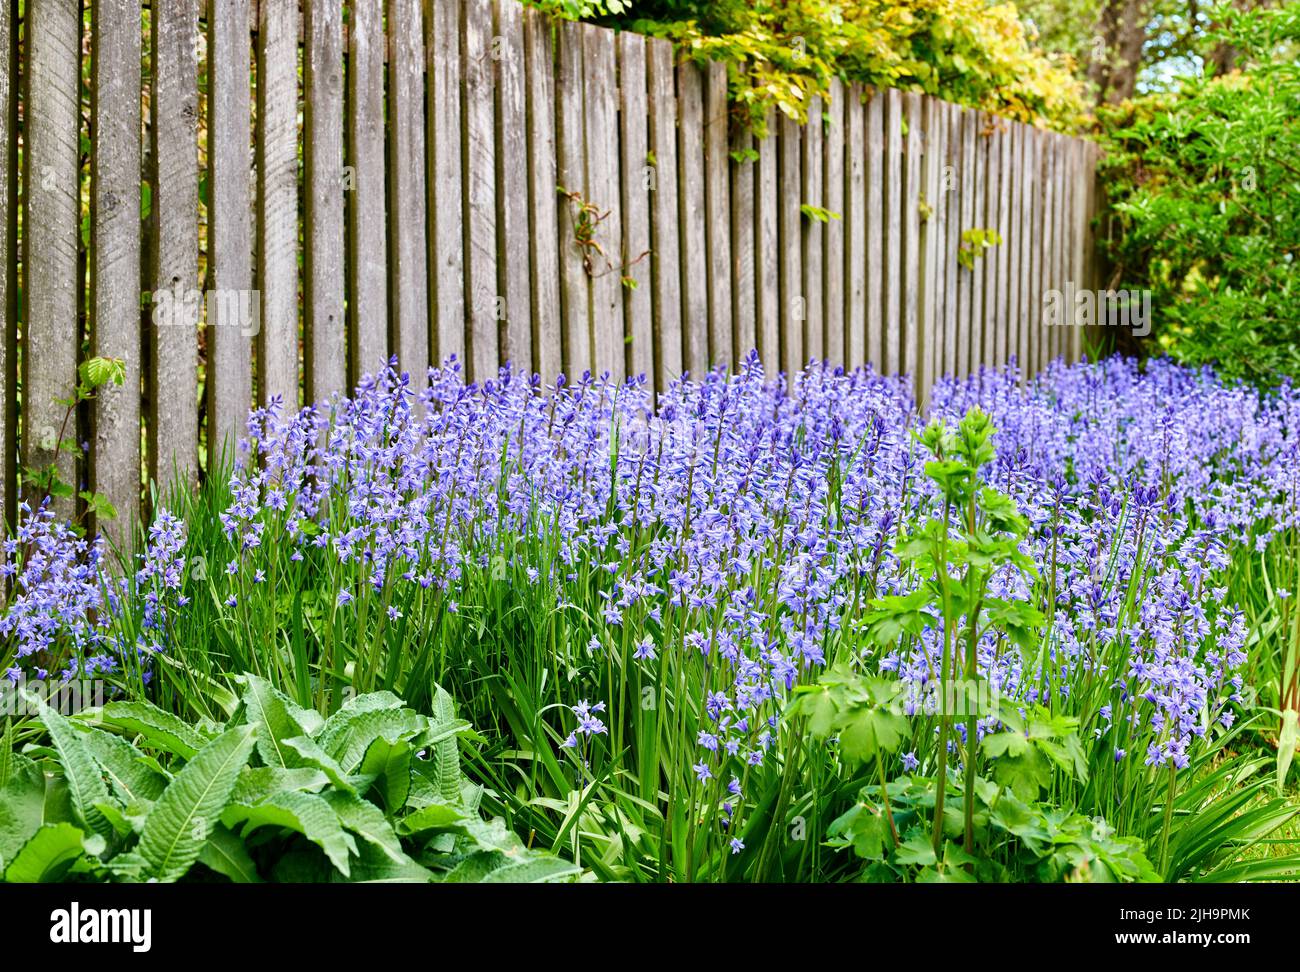 Ein lebendiger Strauß Bluebell-Blumen, der an einem Sommertag in einem Garten im Hinterhof wächst. Farbenfrohe und leuchtend violette Pflanzen blühen im Frühling im Freien Stockfoto